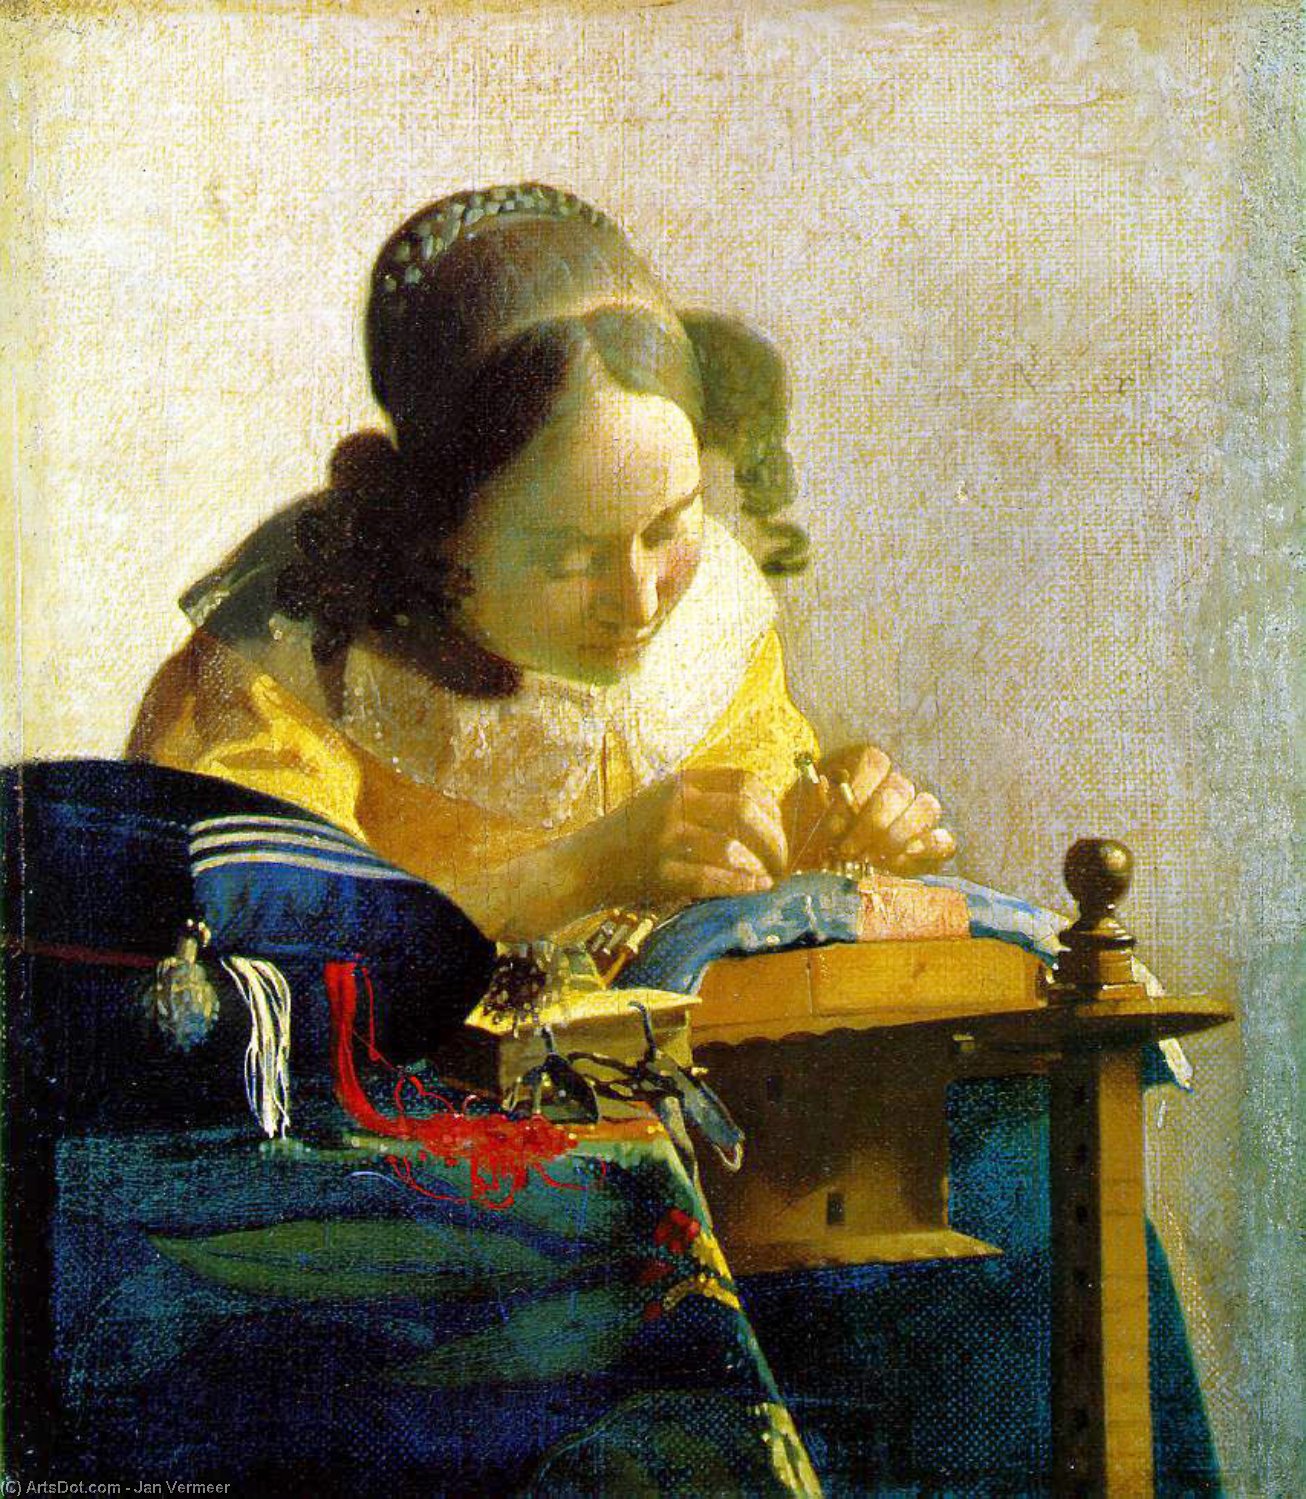 WikiOO.org - Encyclopedia of Fine Arts - Målning, konstverk Jan Vermeer - The lacemaker, Louvre